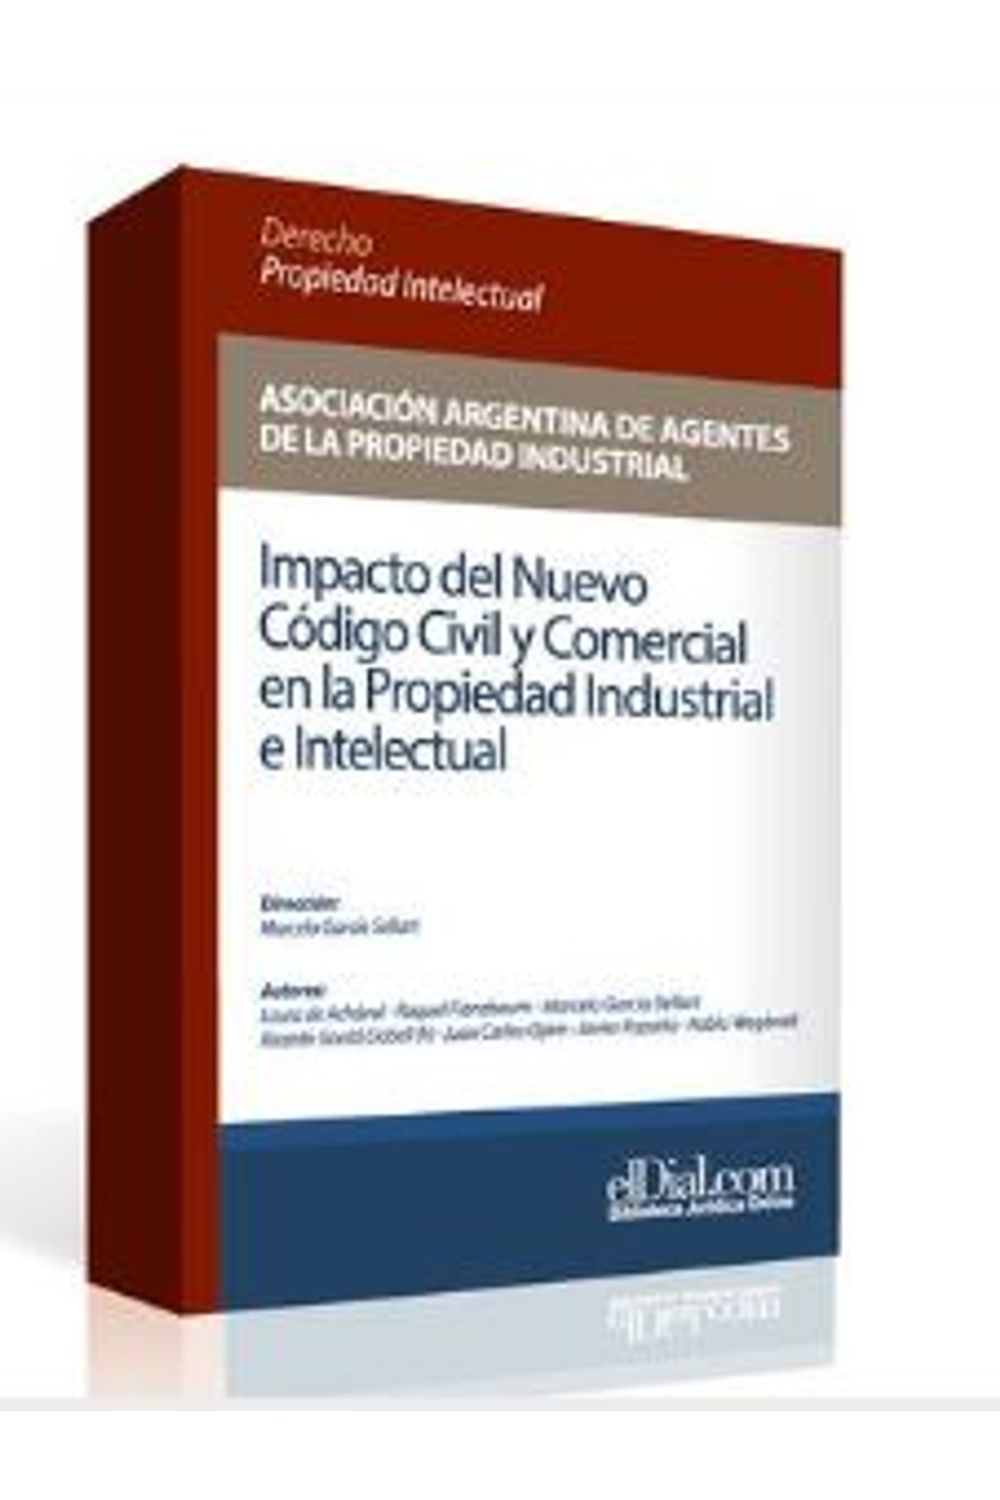 bm-impacto-del-nuevo-codigo-civil-y-comercial-en-la-propiedad-industrial-e-intelectual-editorial-albrematica-9789871799565